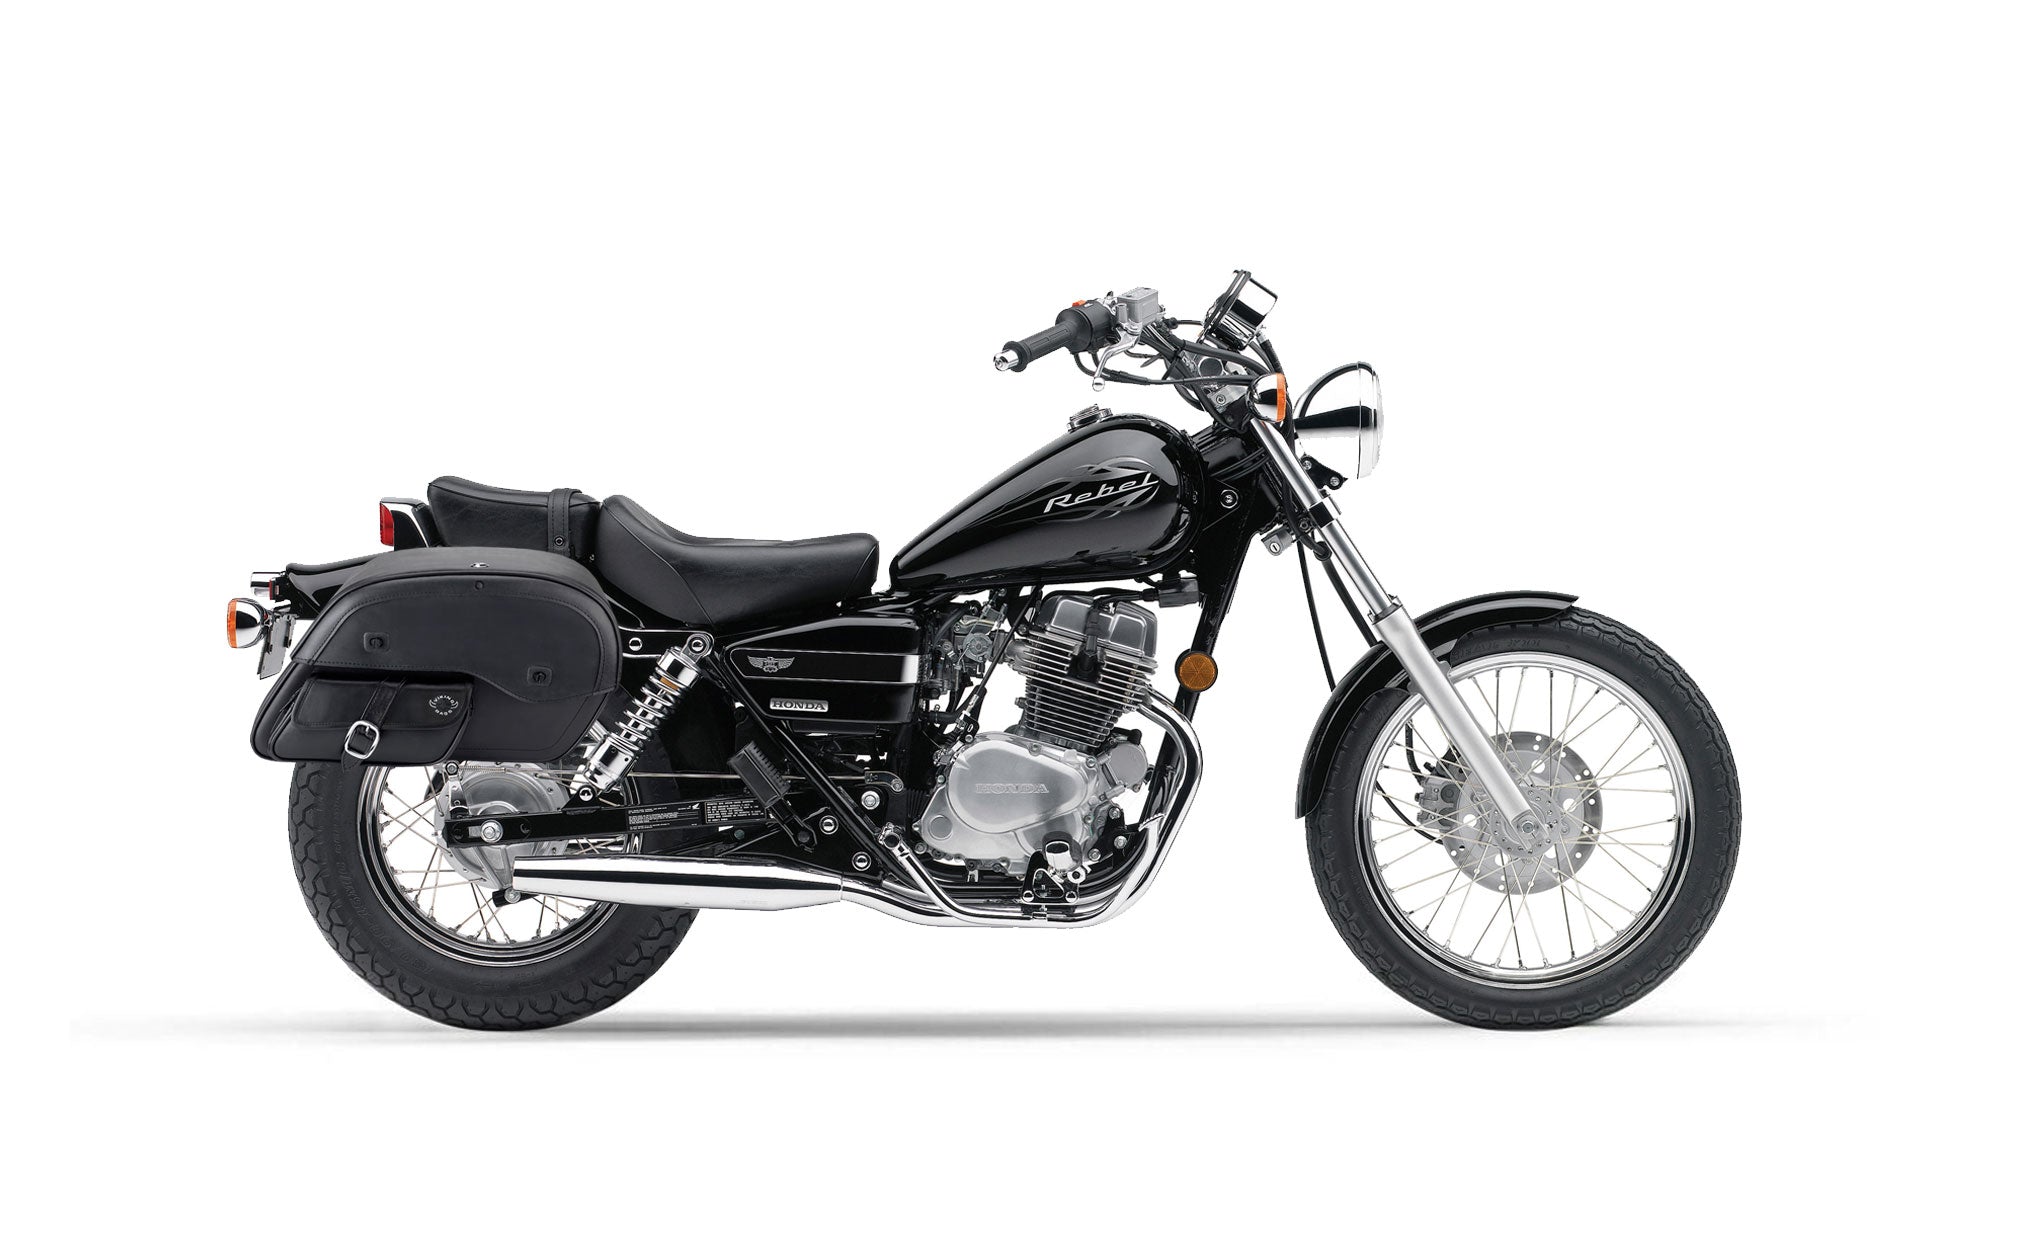 Viking Essential Side Pocket Large Honda Rebel 250 Leather Motorcycle Saddlebags on Bike Photo @expand